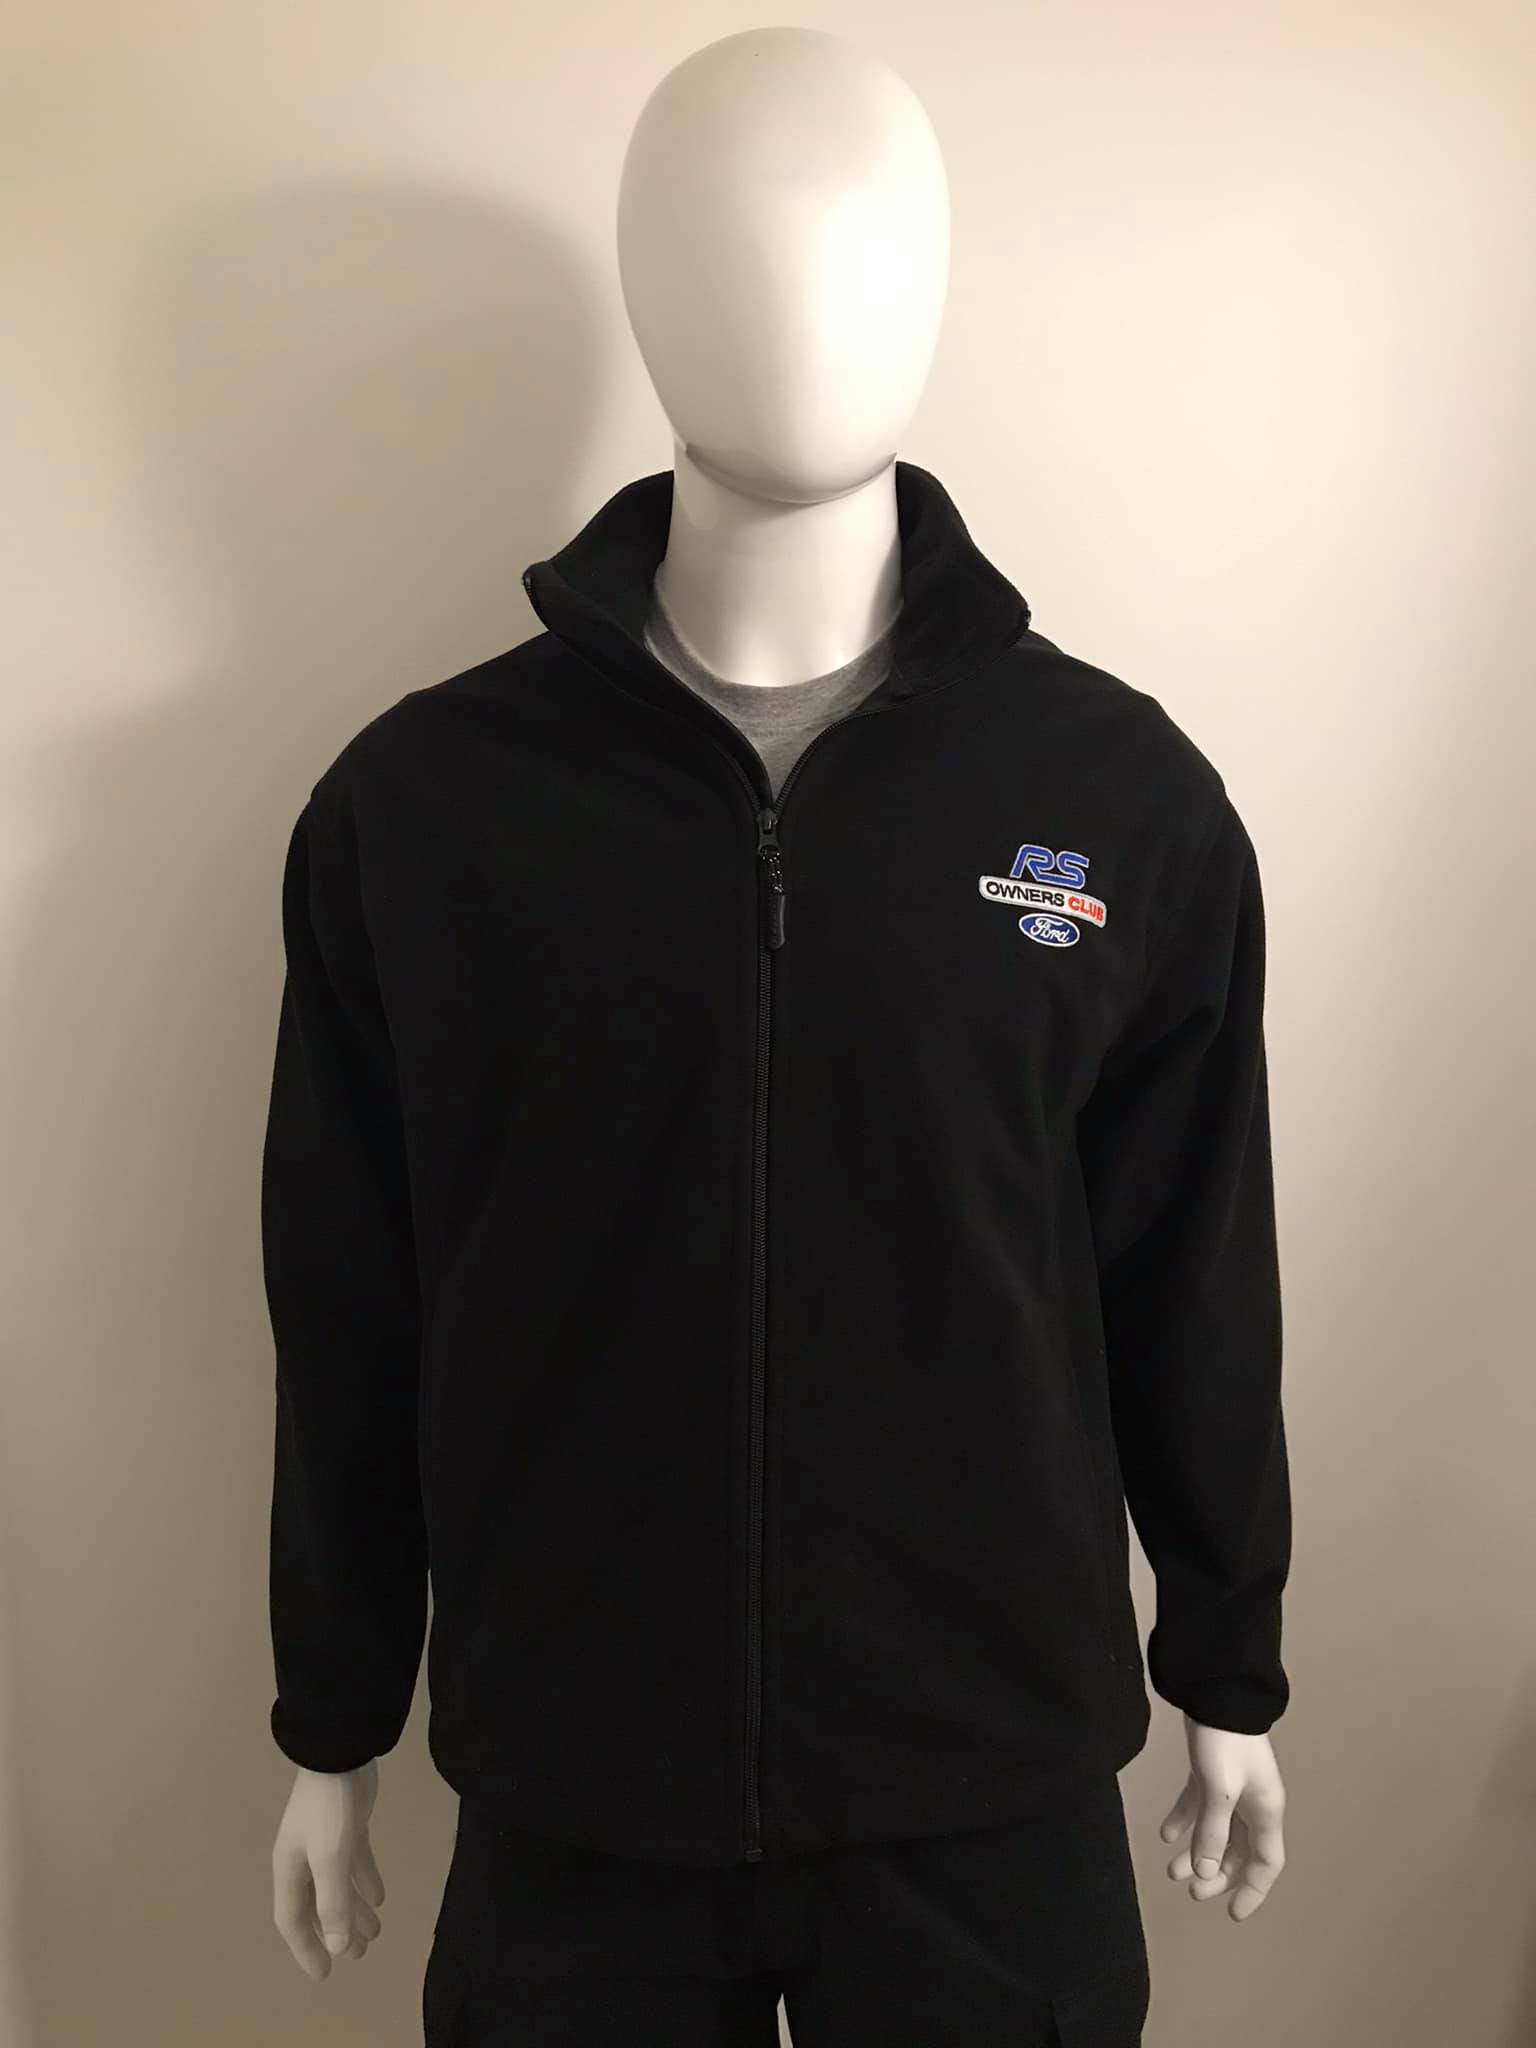 RSOC Fleece Jacket (Waterproof/Windproof)